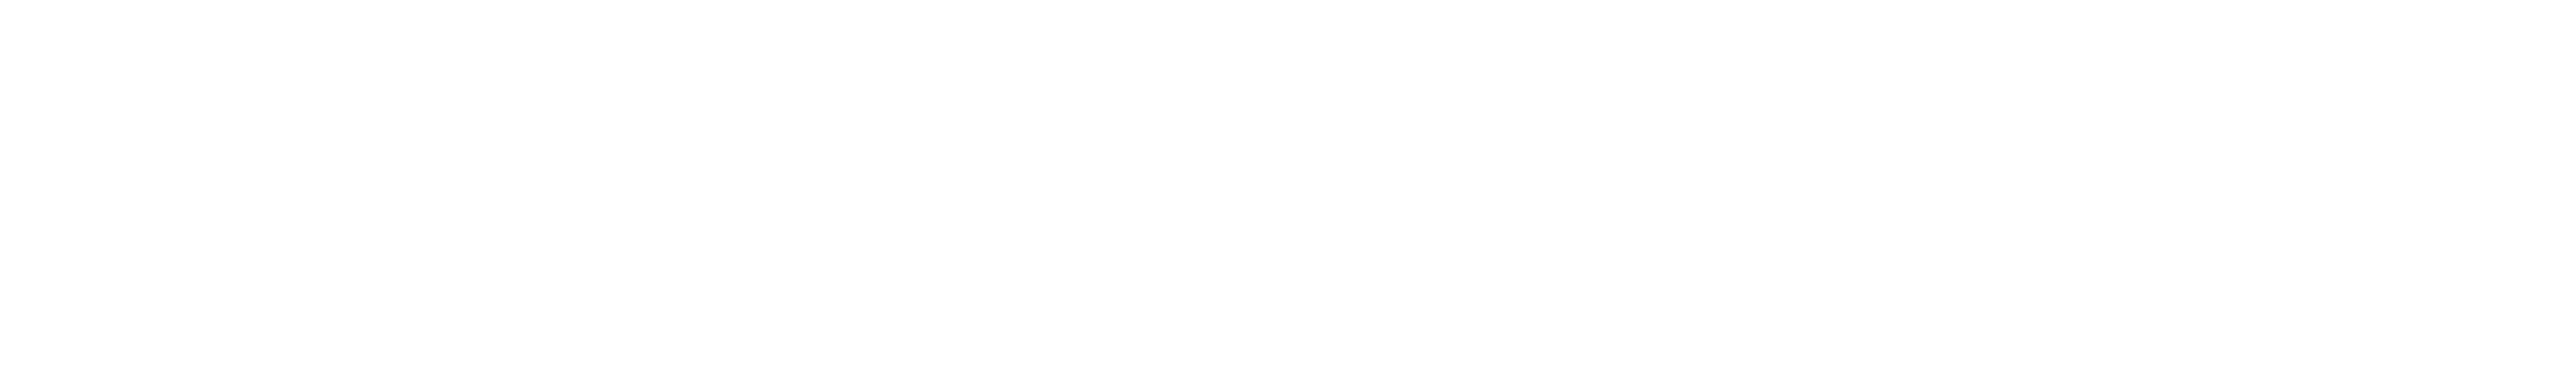 GDG Cloud Abidjan - Logo